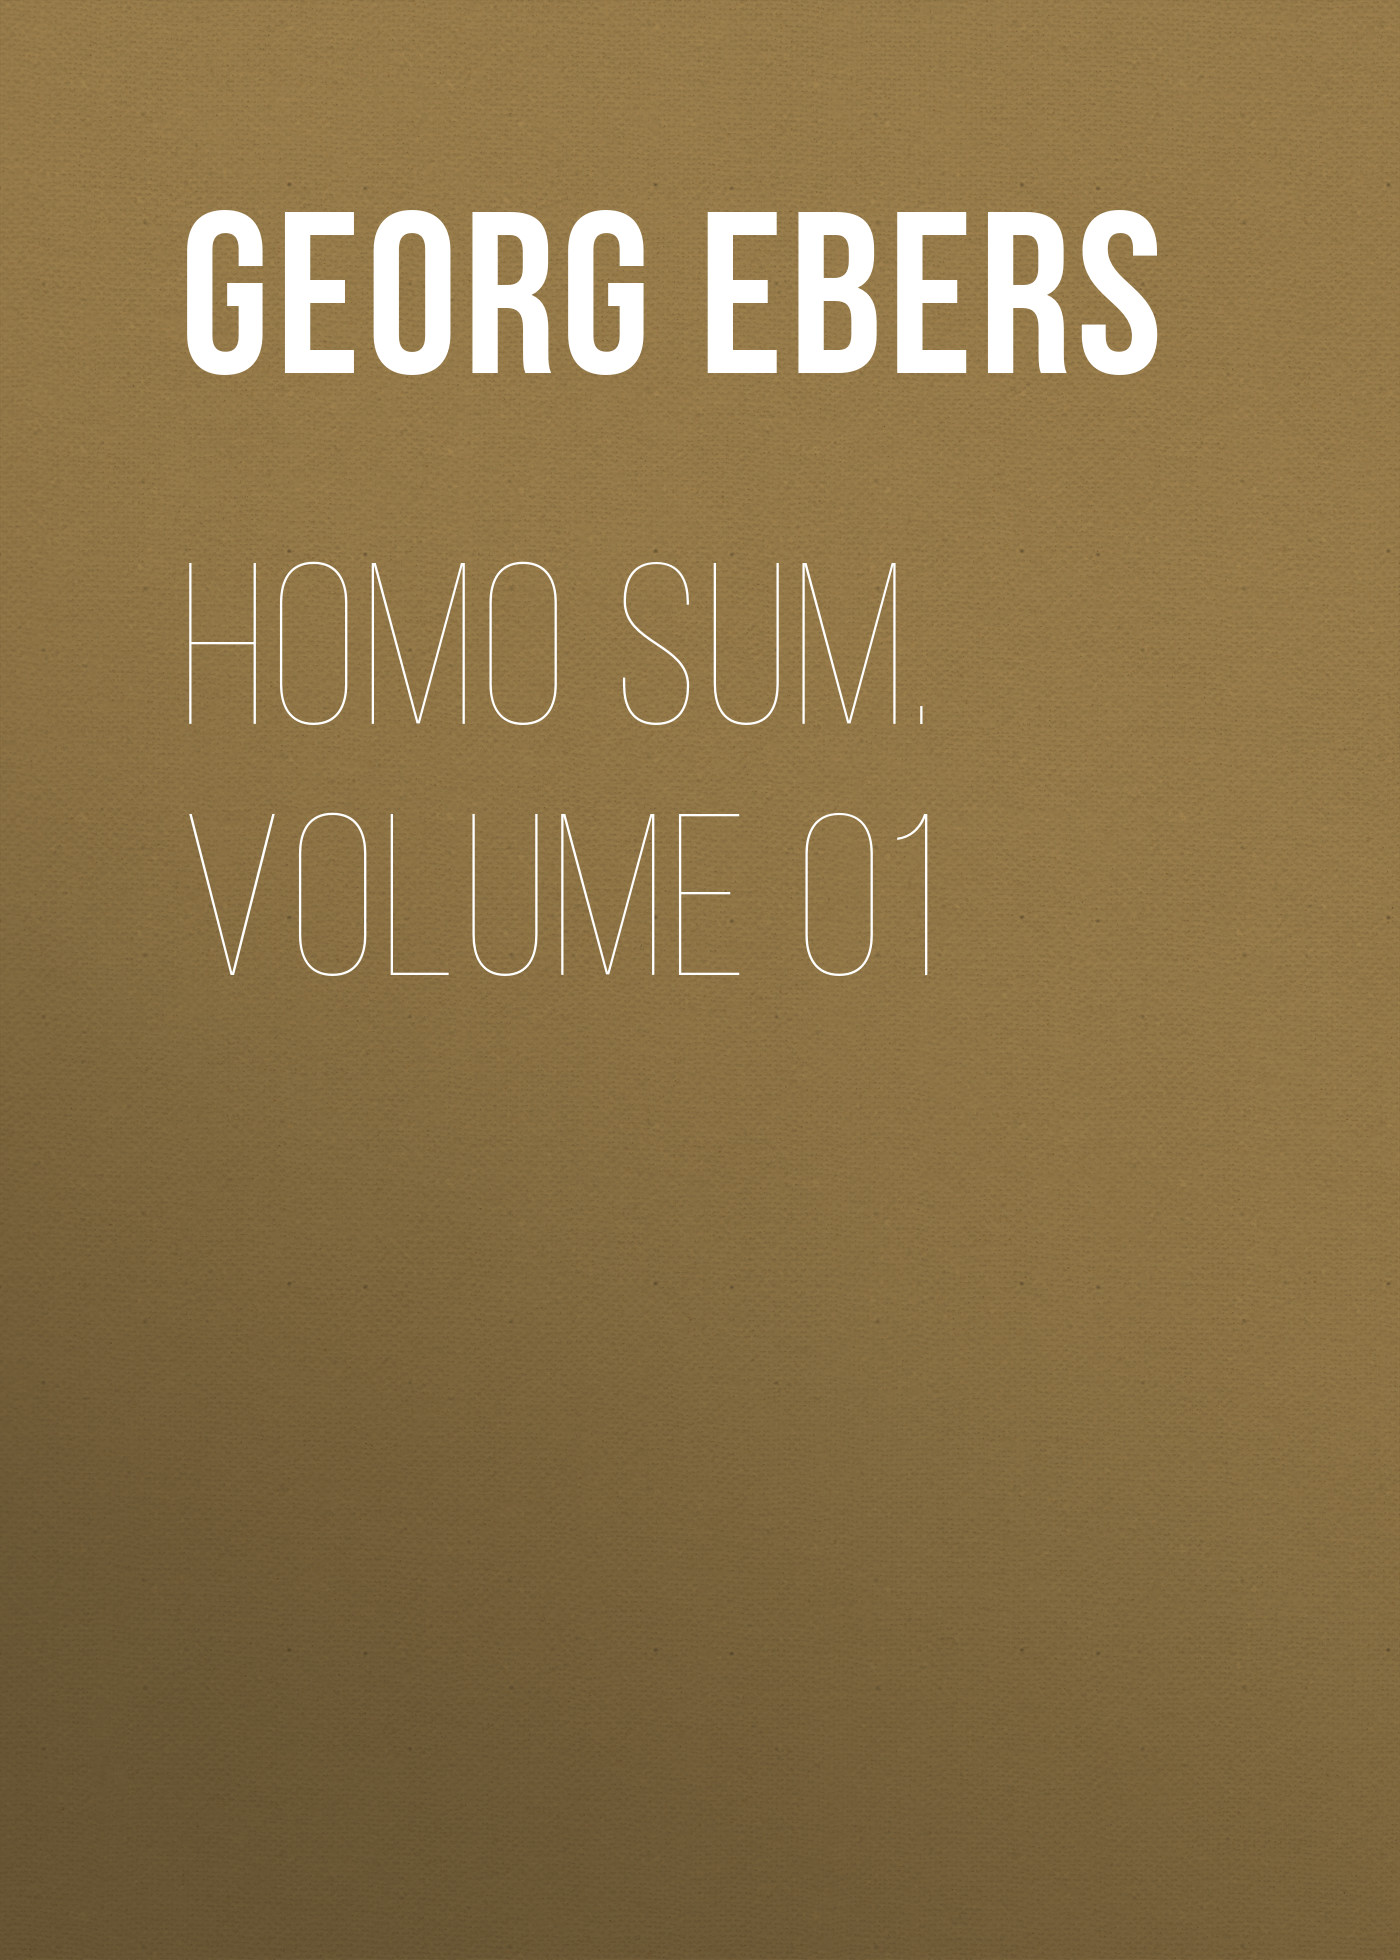 Книга Homo Sum. Volume 01 из серии , созданная Georg Ebers, может относится к жанру Зарубежная классика, Зарубежная старинная литература. Стоимость электронной книги Homo Sum. Volume 01 с идентификатором 42627987 составляет 0 руб.